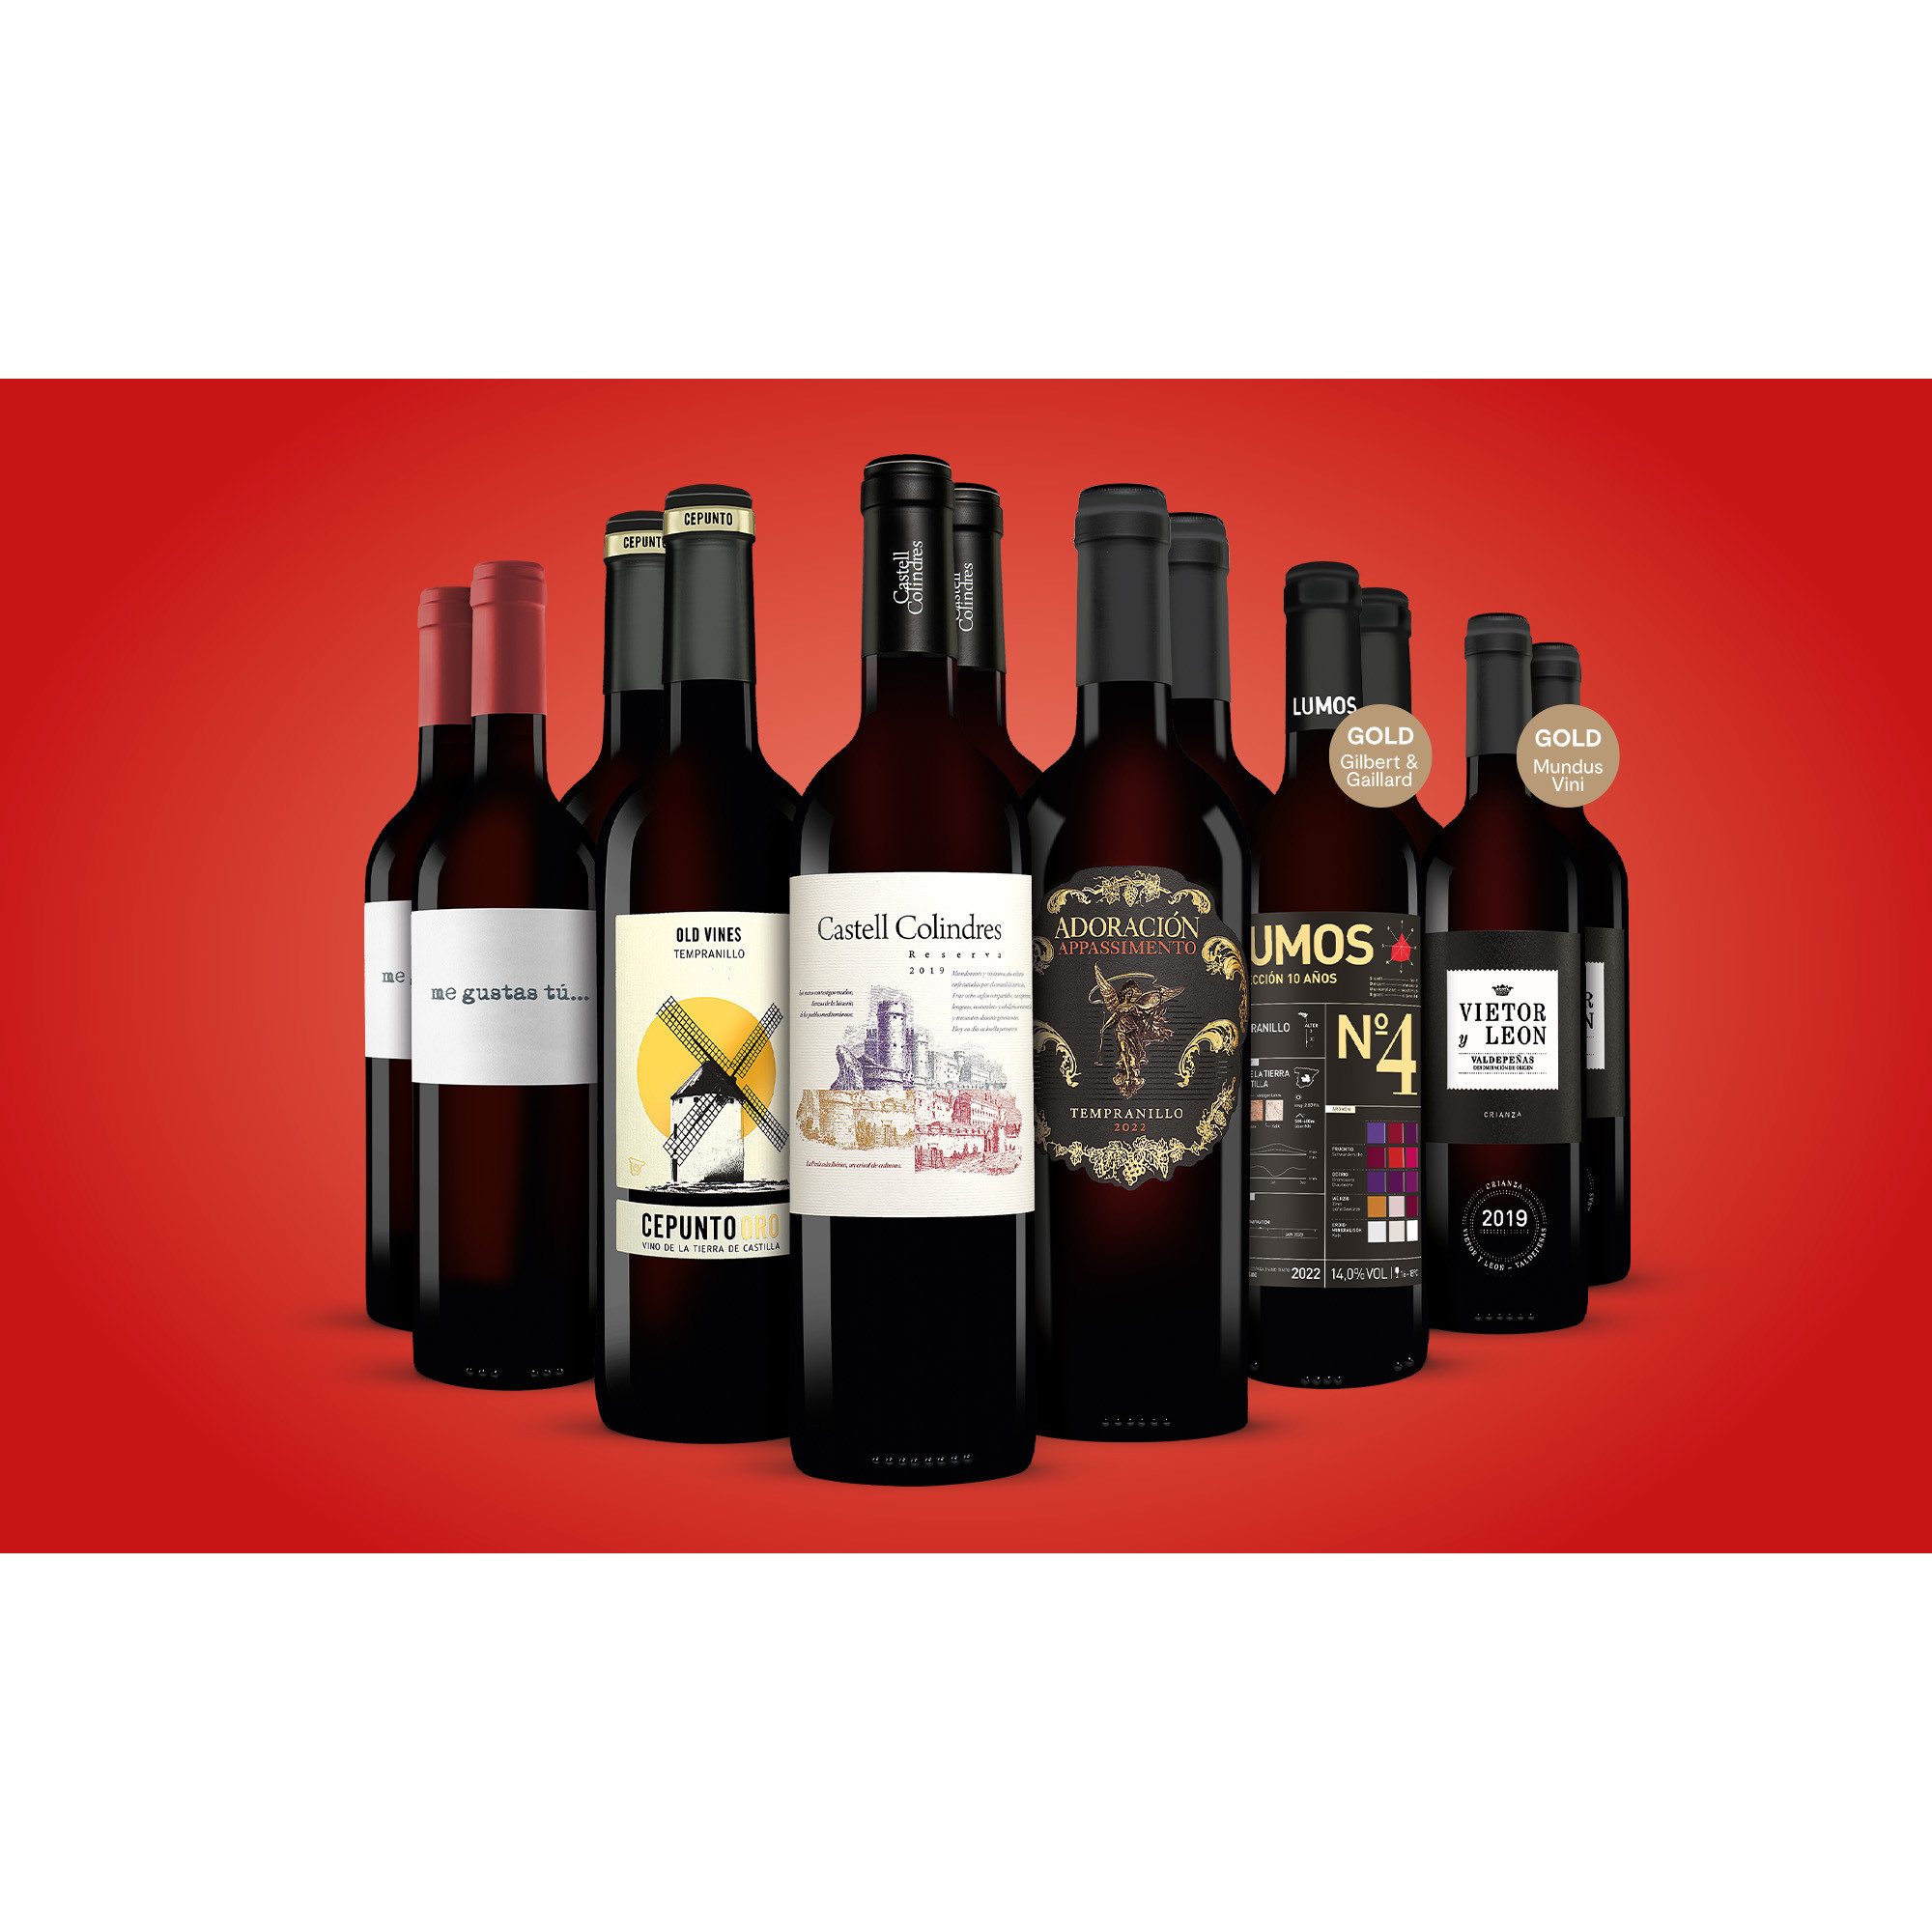 Topseller-Paket  9L Weinpaket aus Spanien 6706 vinos DE